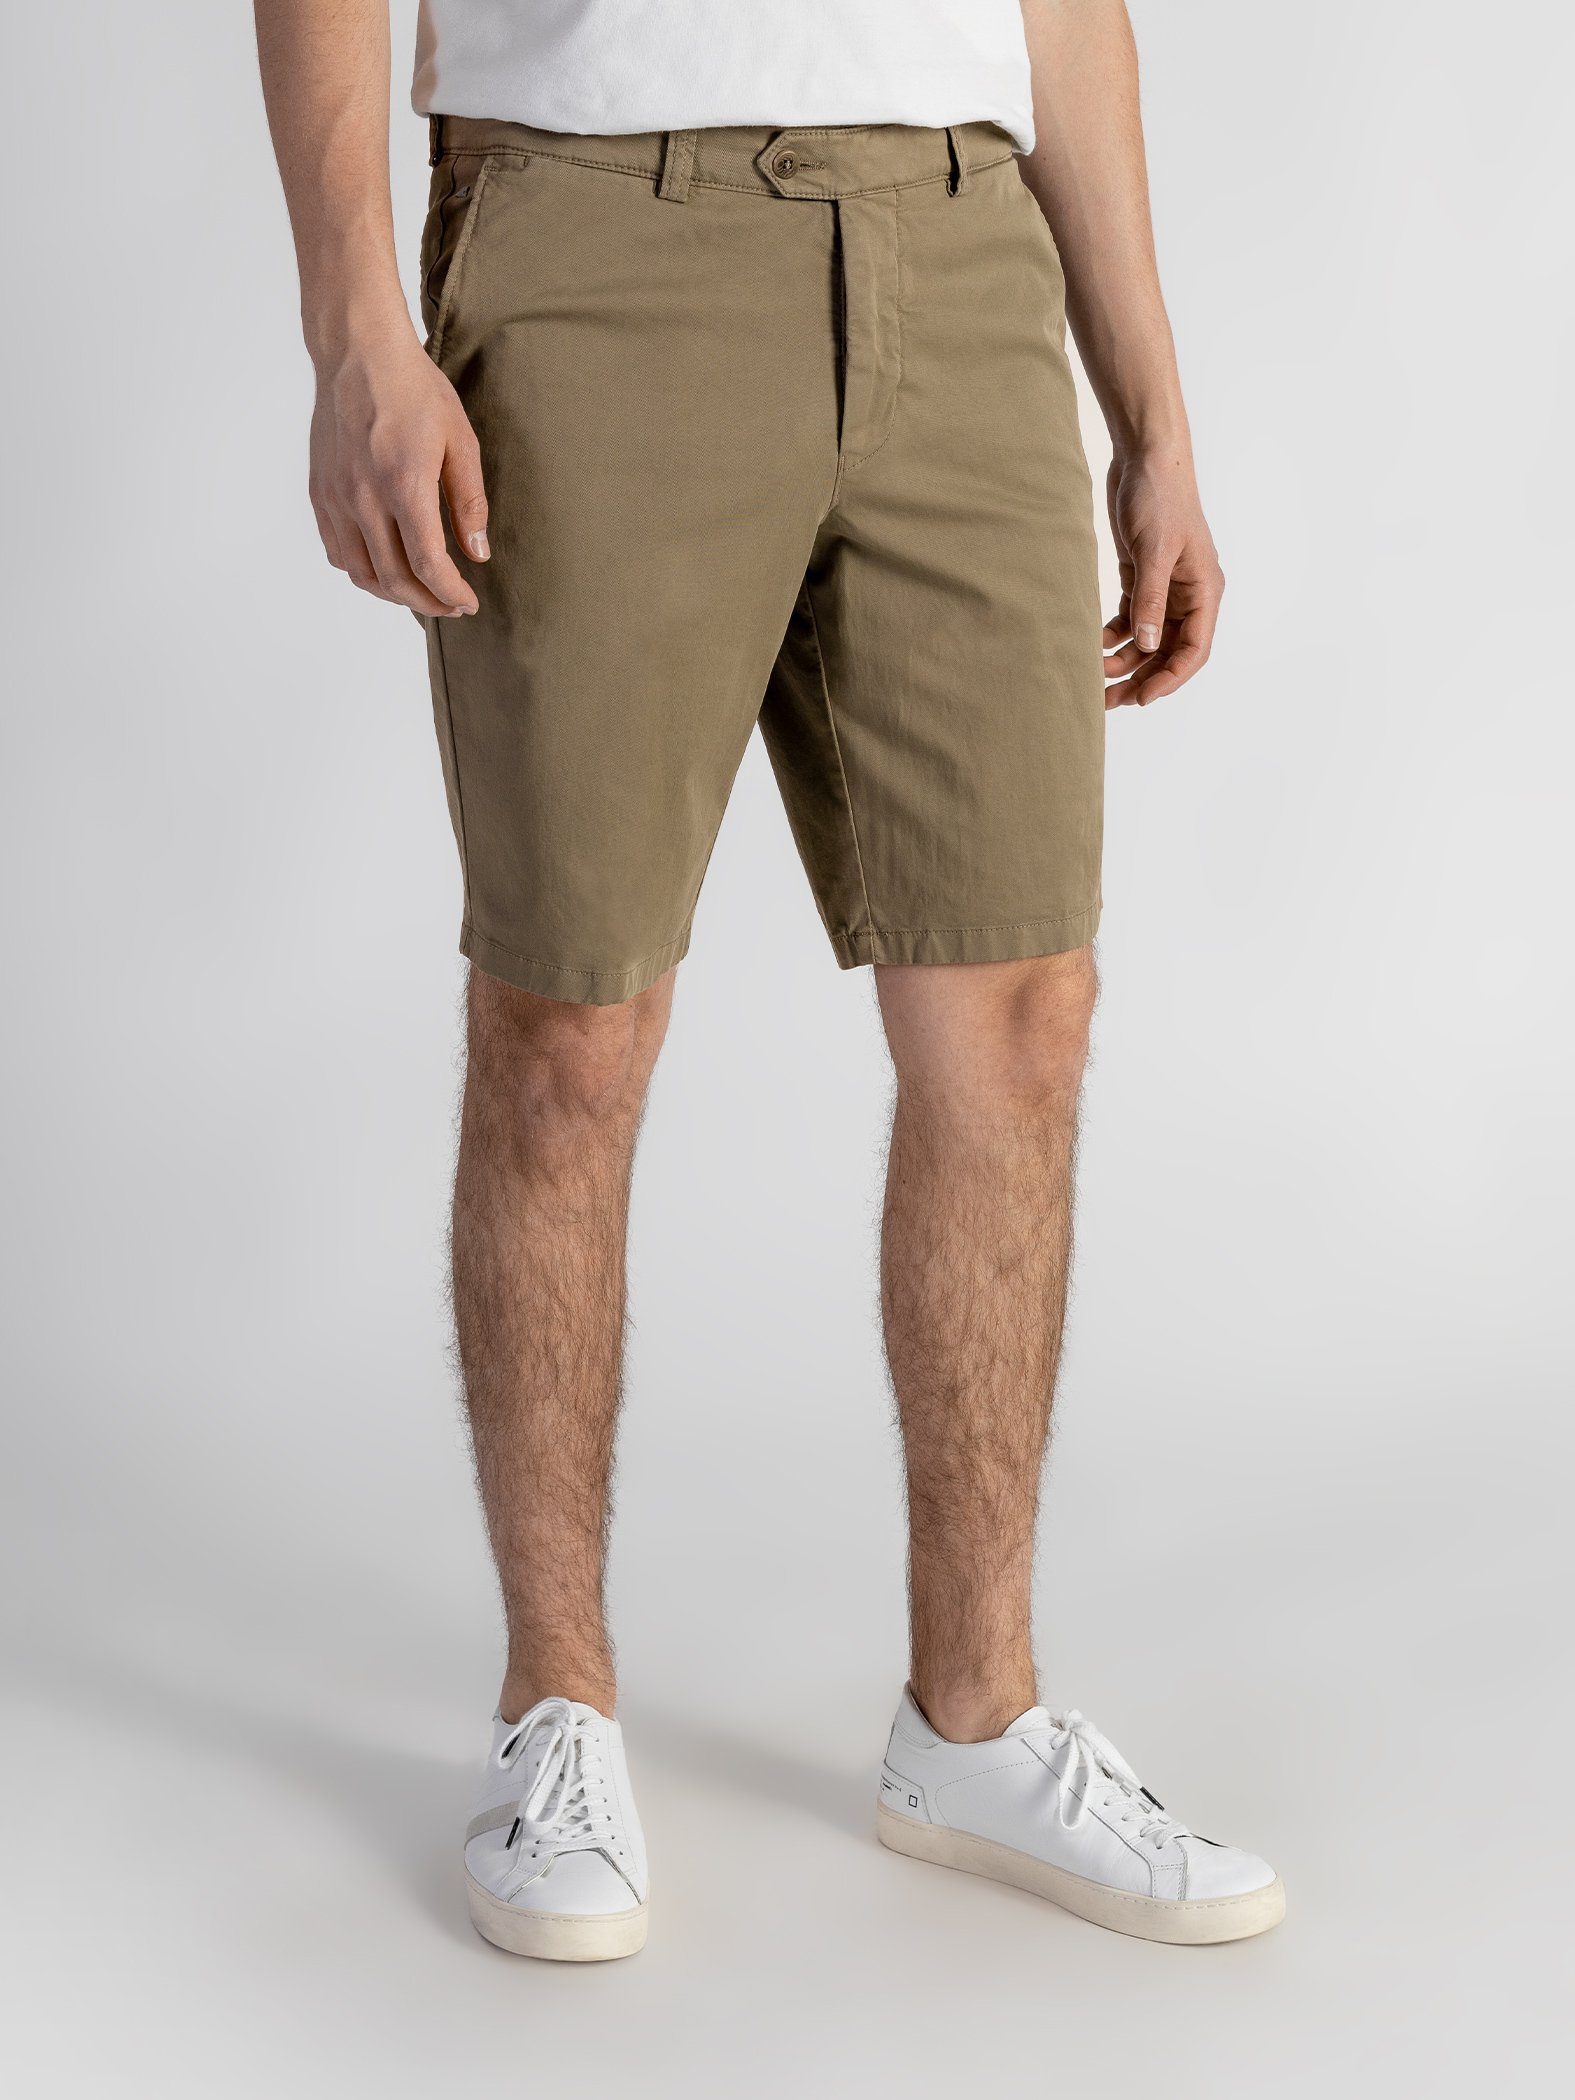 TwoMates Shorts Shorts mit elastischem Bund, Farbauswahl, GOTS-zertifiziert Beige